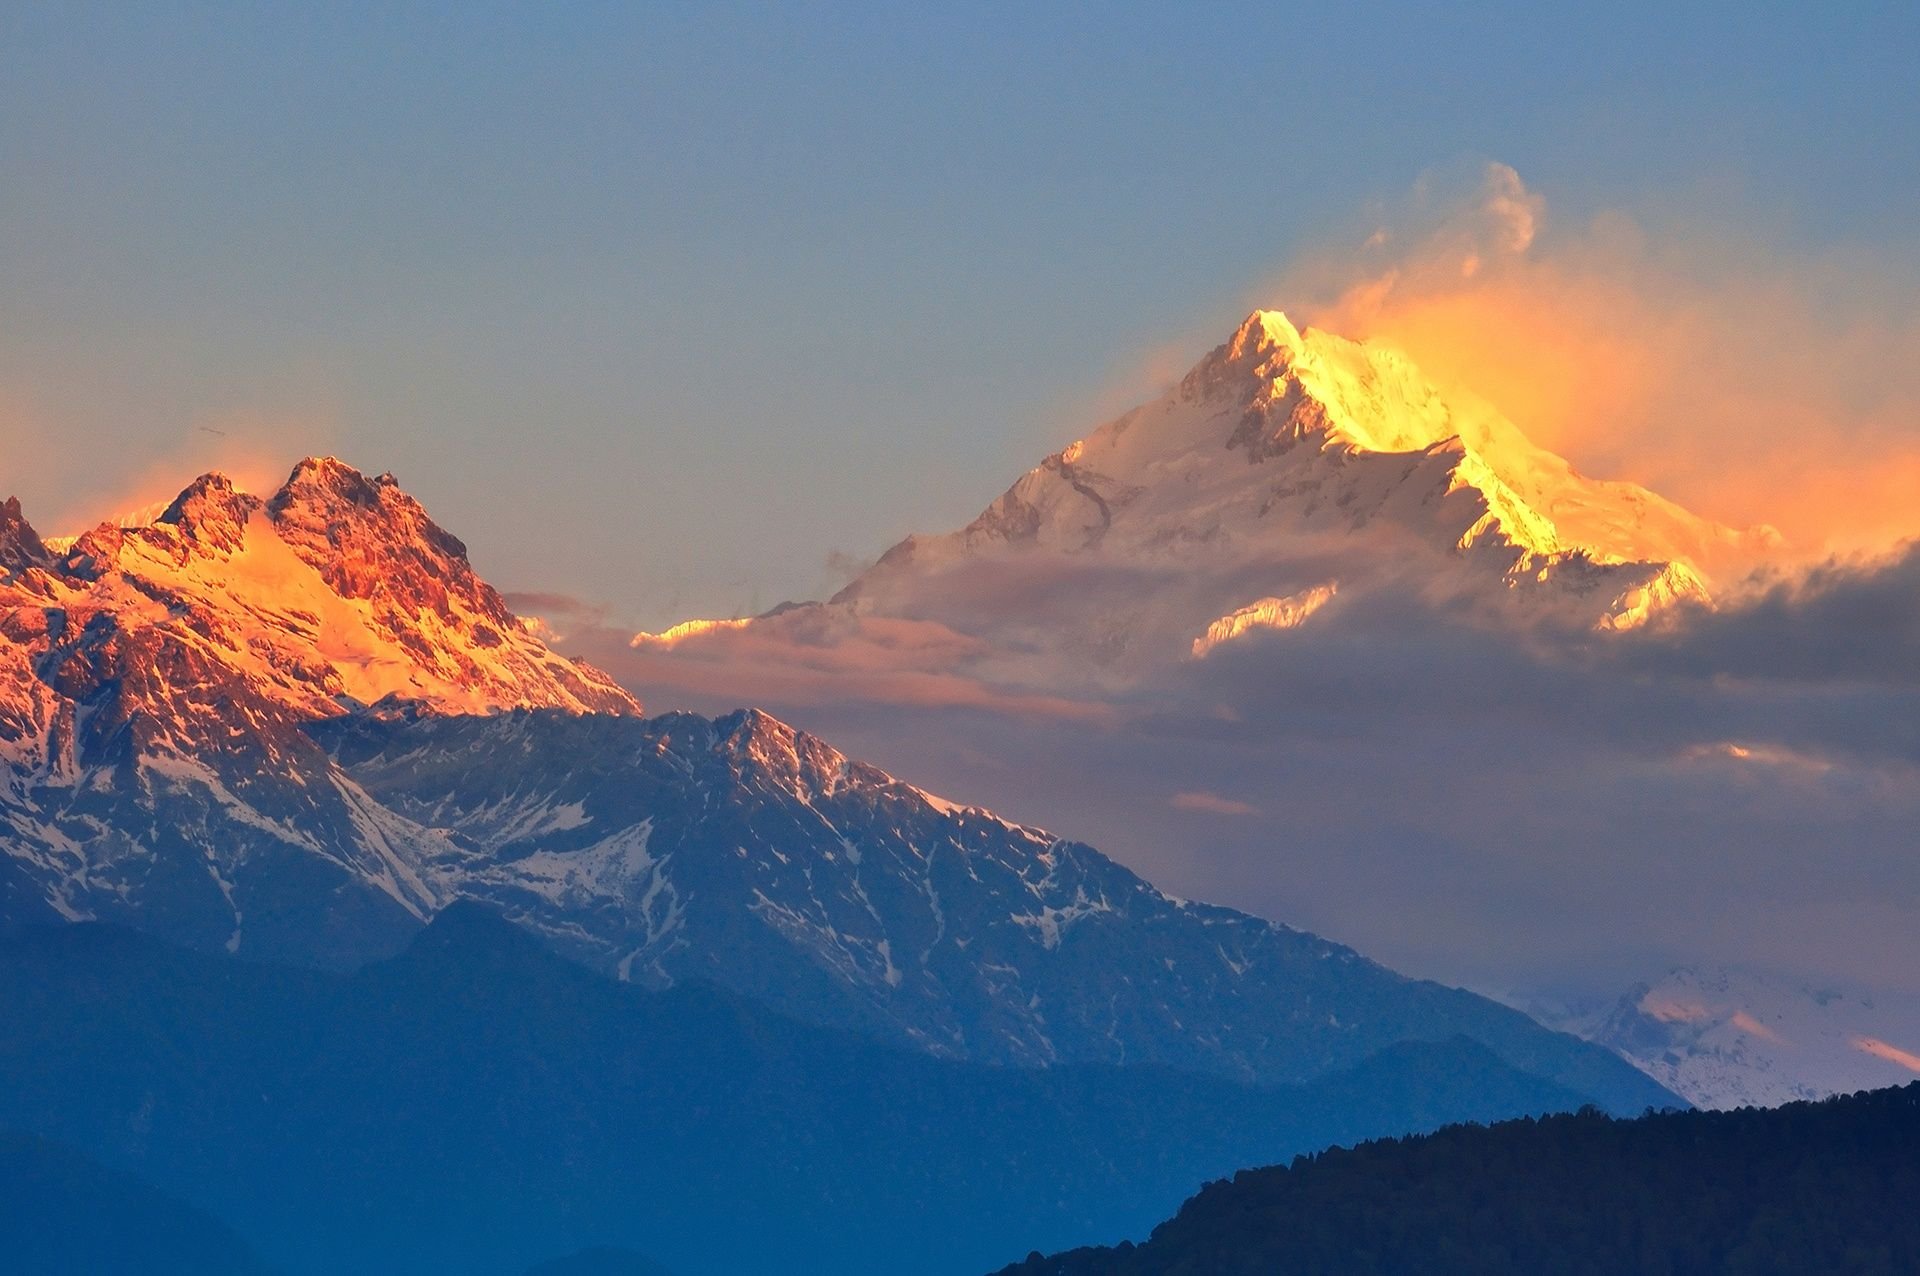 Гималаи море. Гималаи Эверест Джомолунгма. Канченджанга Гималаи Непал. Гора Эверест (Джомолунгма). Гималаи. Тибет Эверест Гималаи.